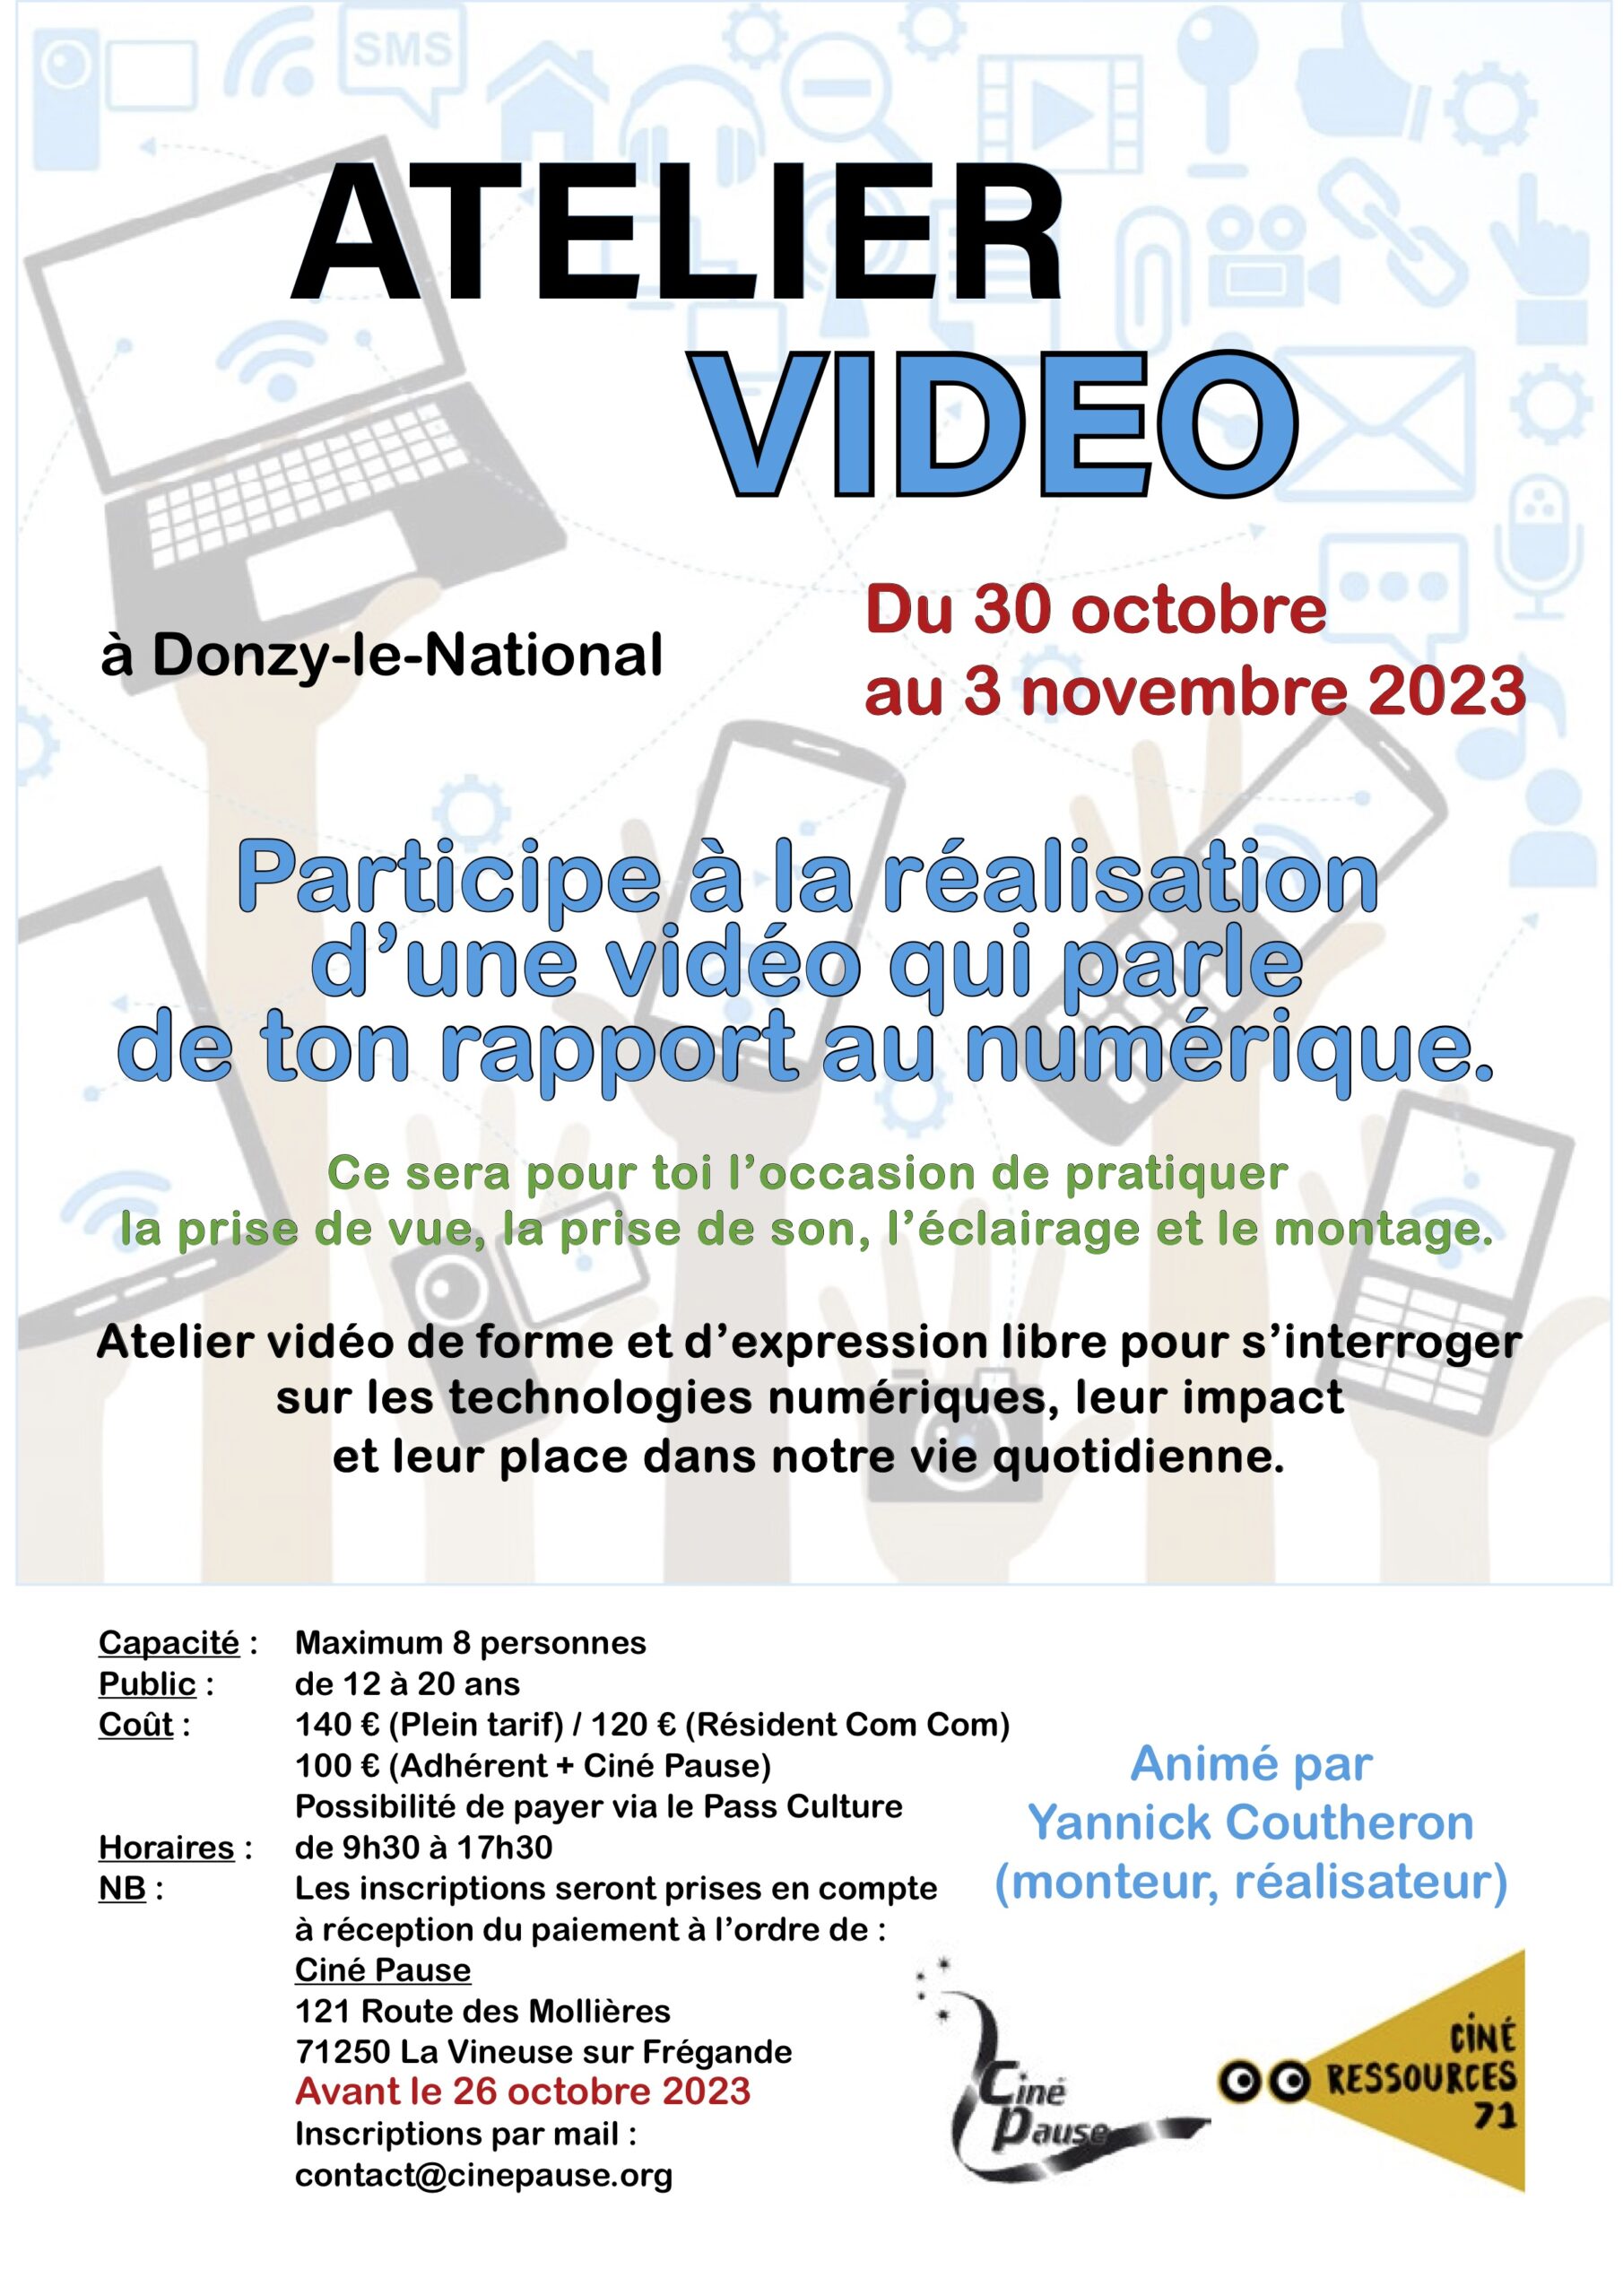 Atelier vidéo pour les 12-20 ans à Donzy-le-National